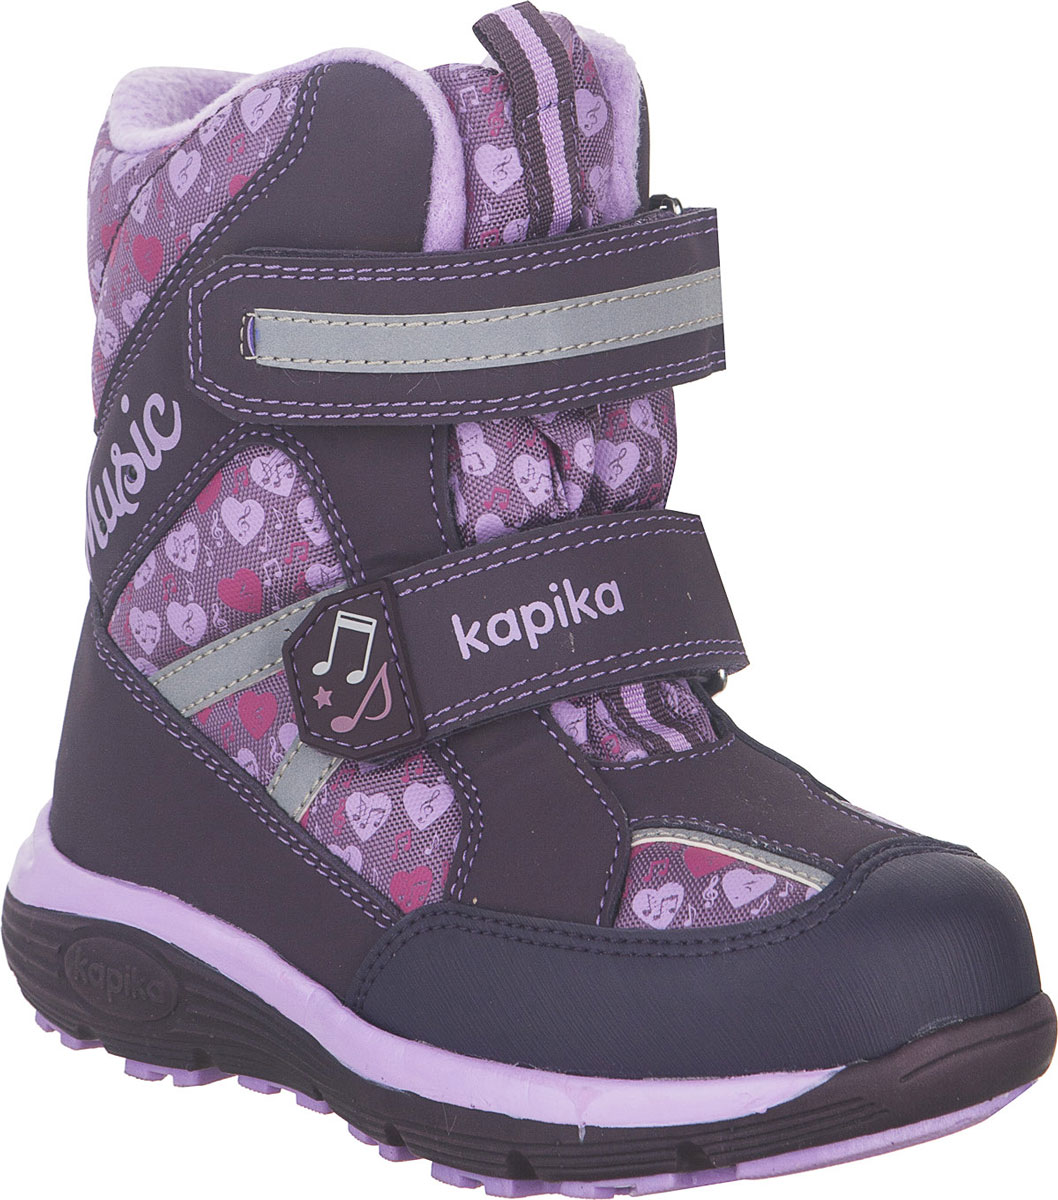 Ботинки для девочки Kapika, цвет: фиолетовый, сиреневый. 43215-2. Размер 31